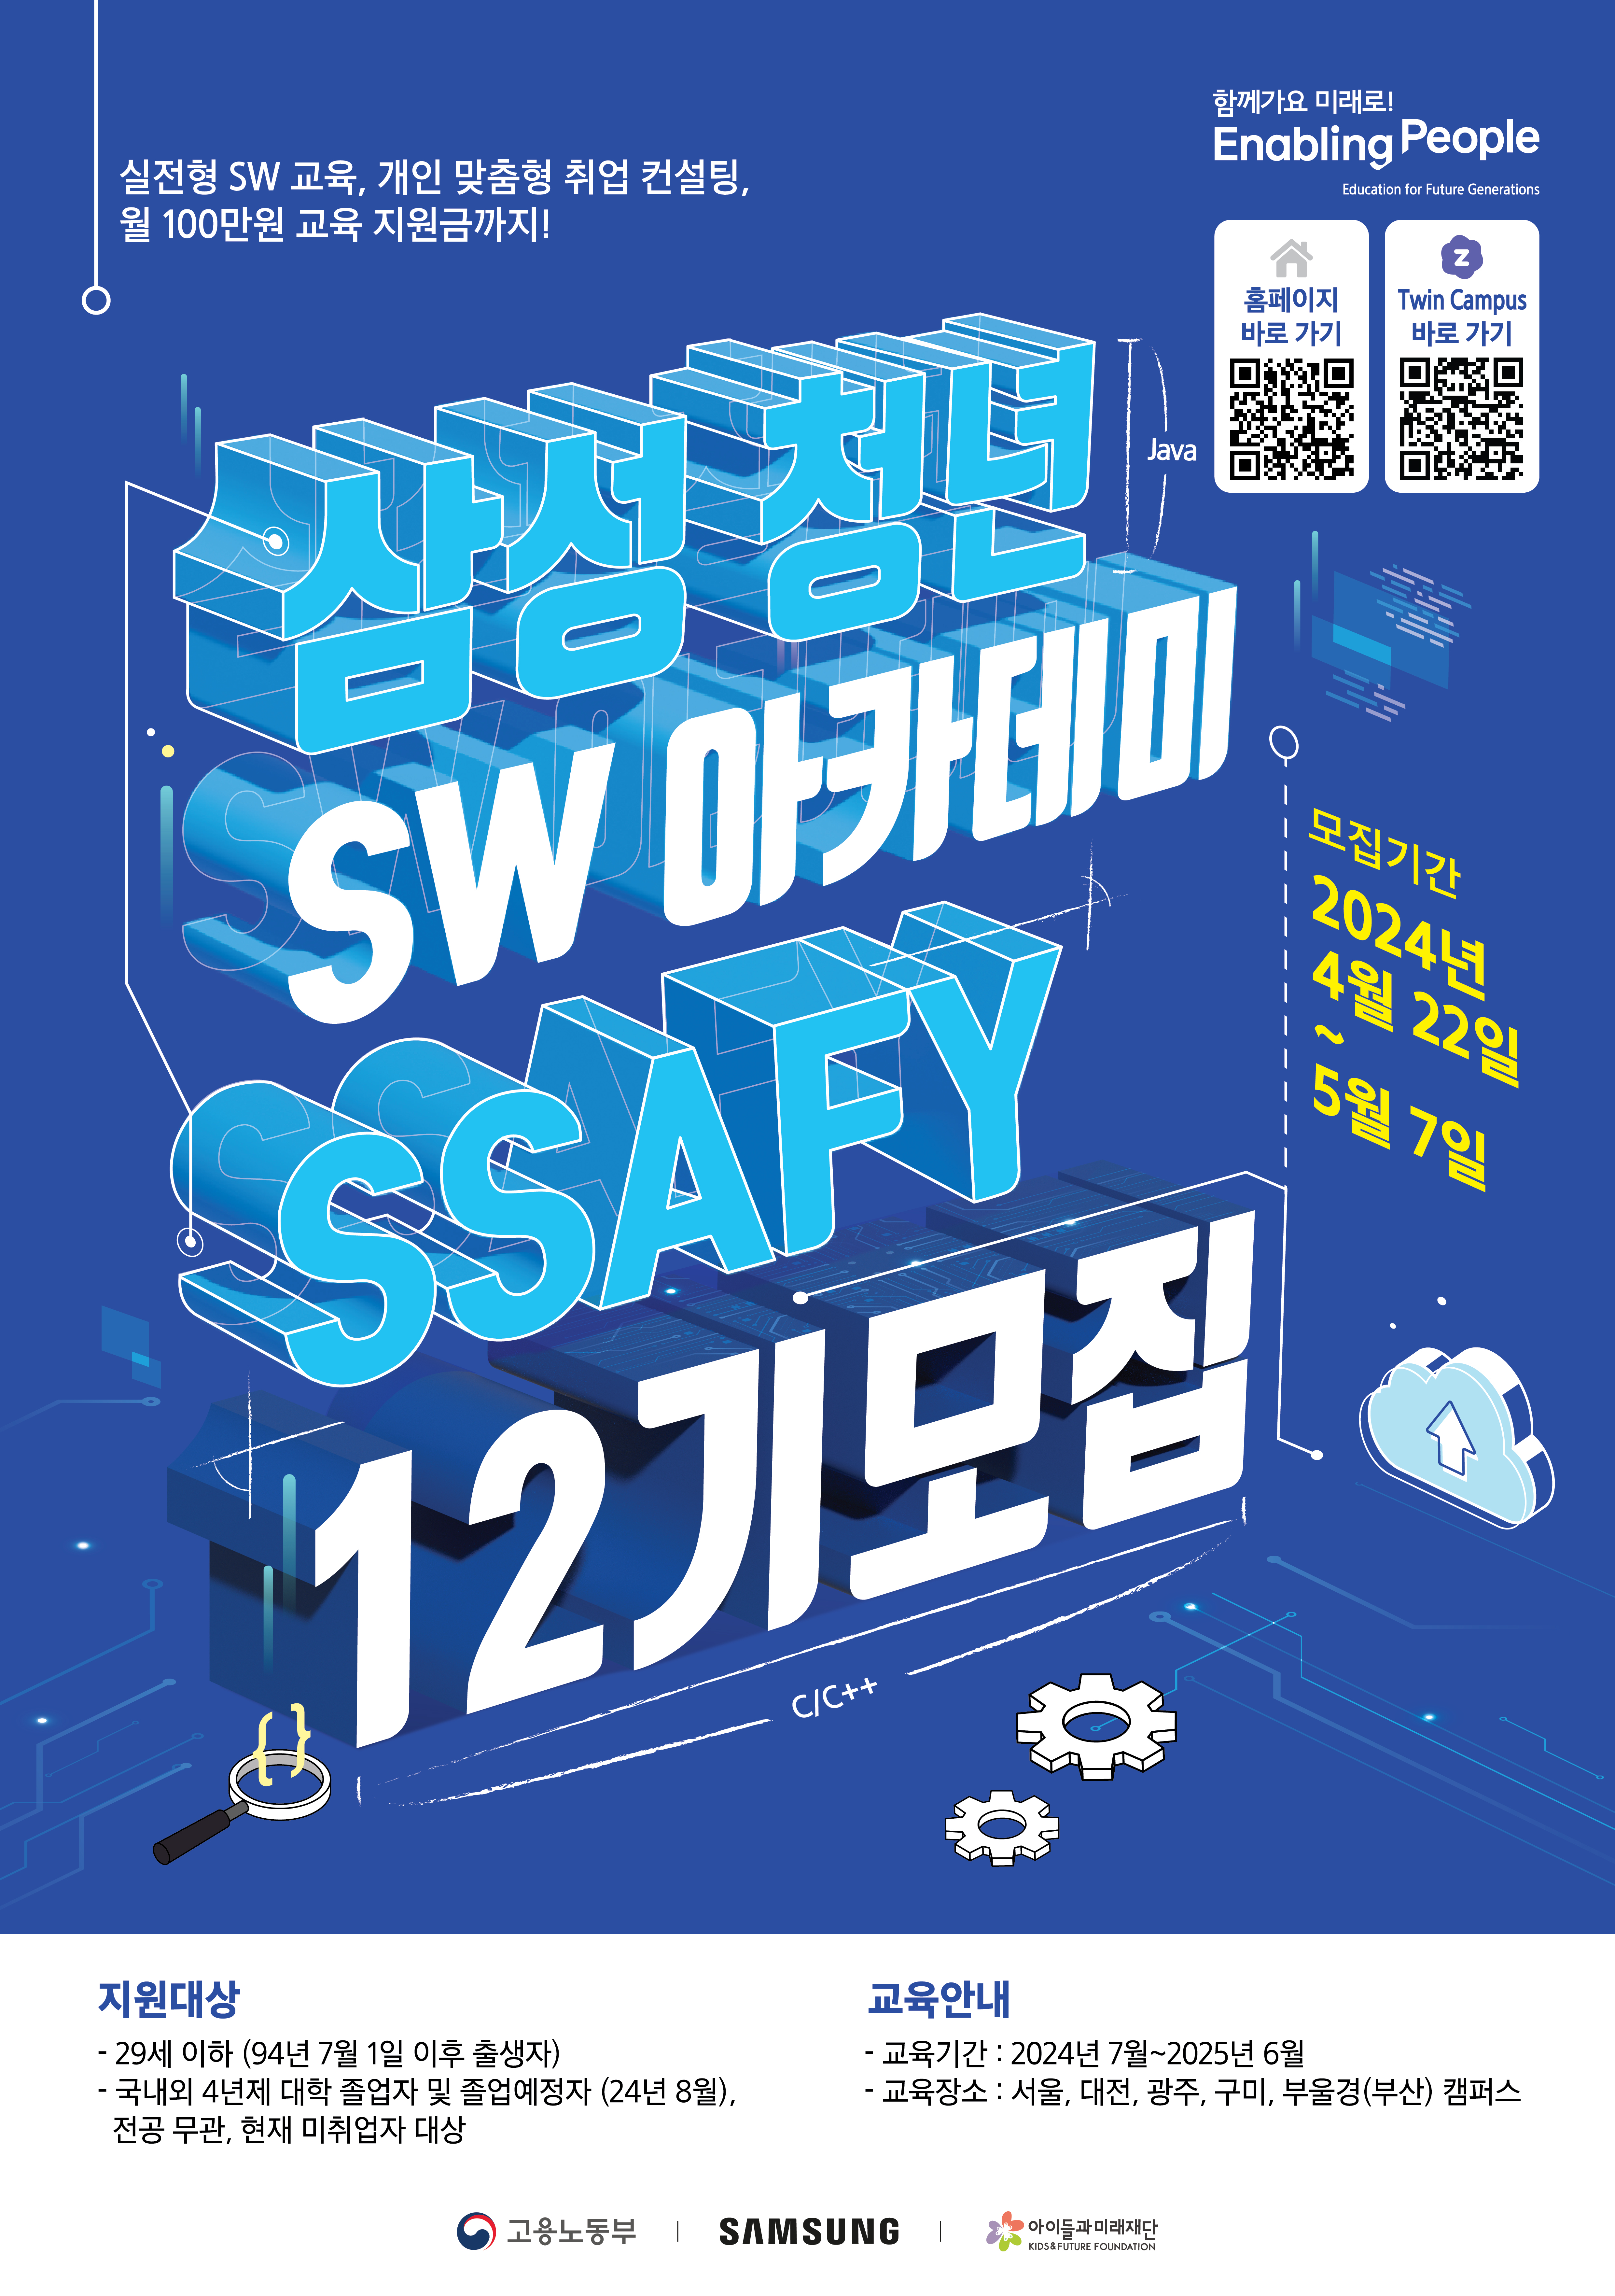 「삼성 청년 SW 아카데미」12기 교육생 모집홍보 협조 요청